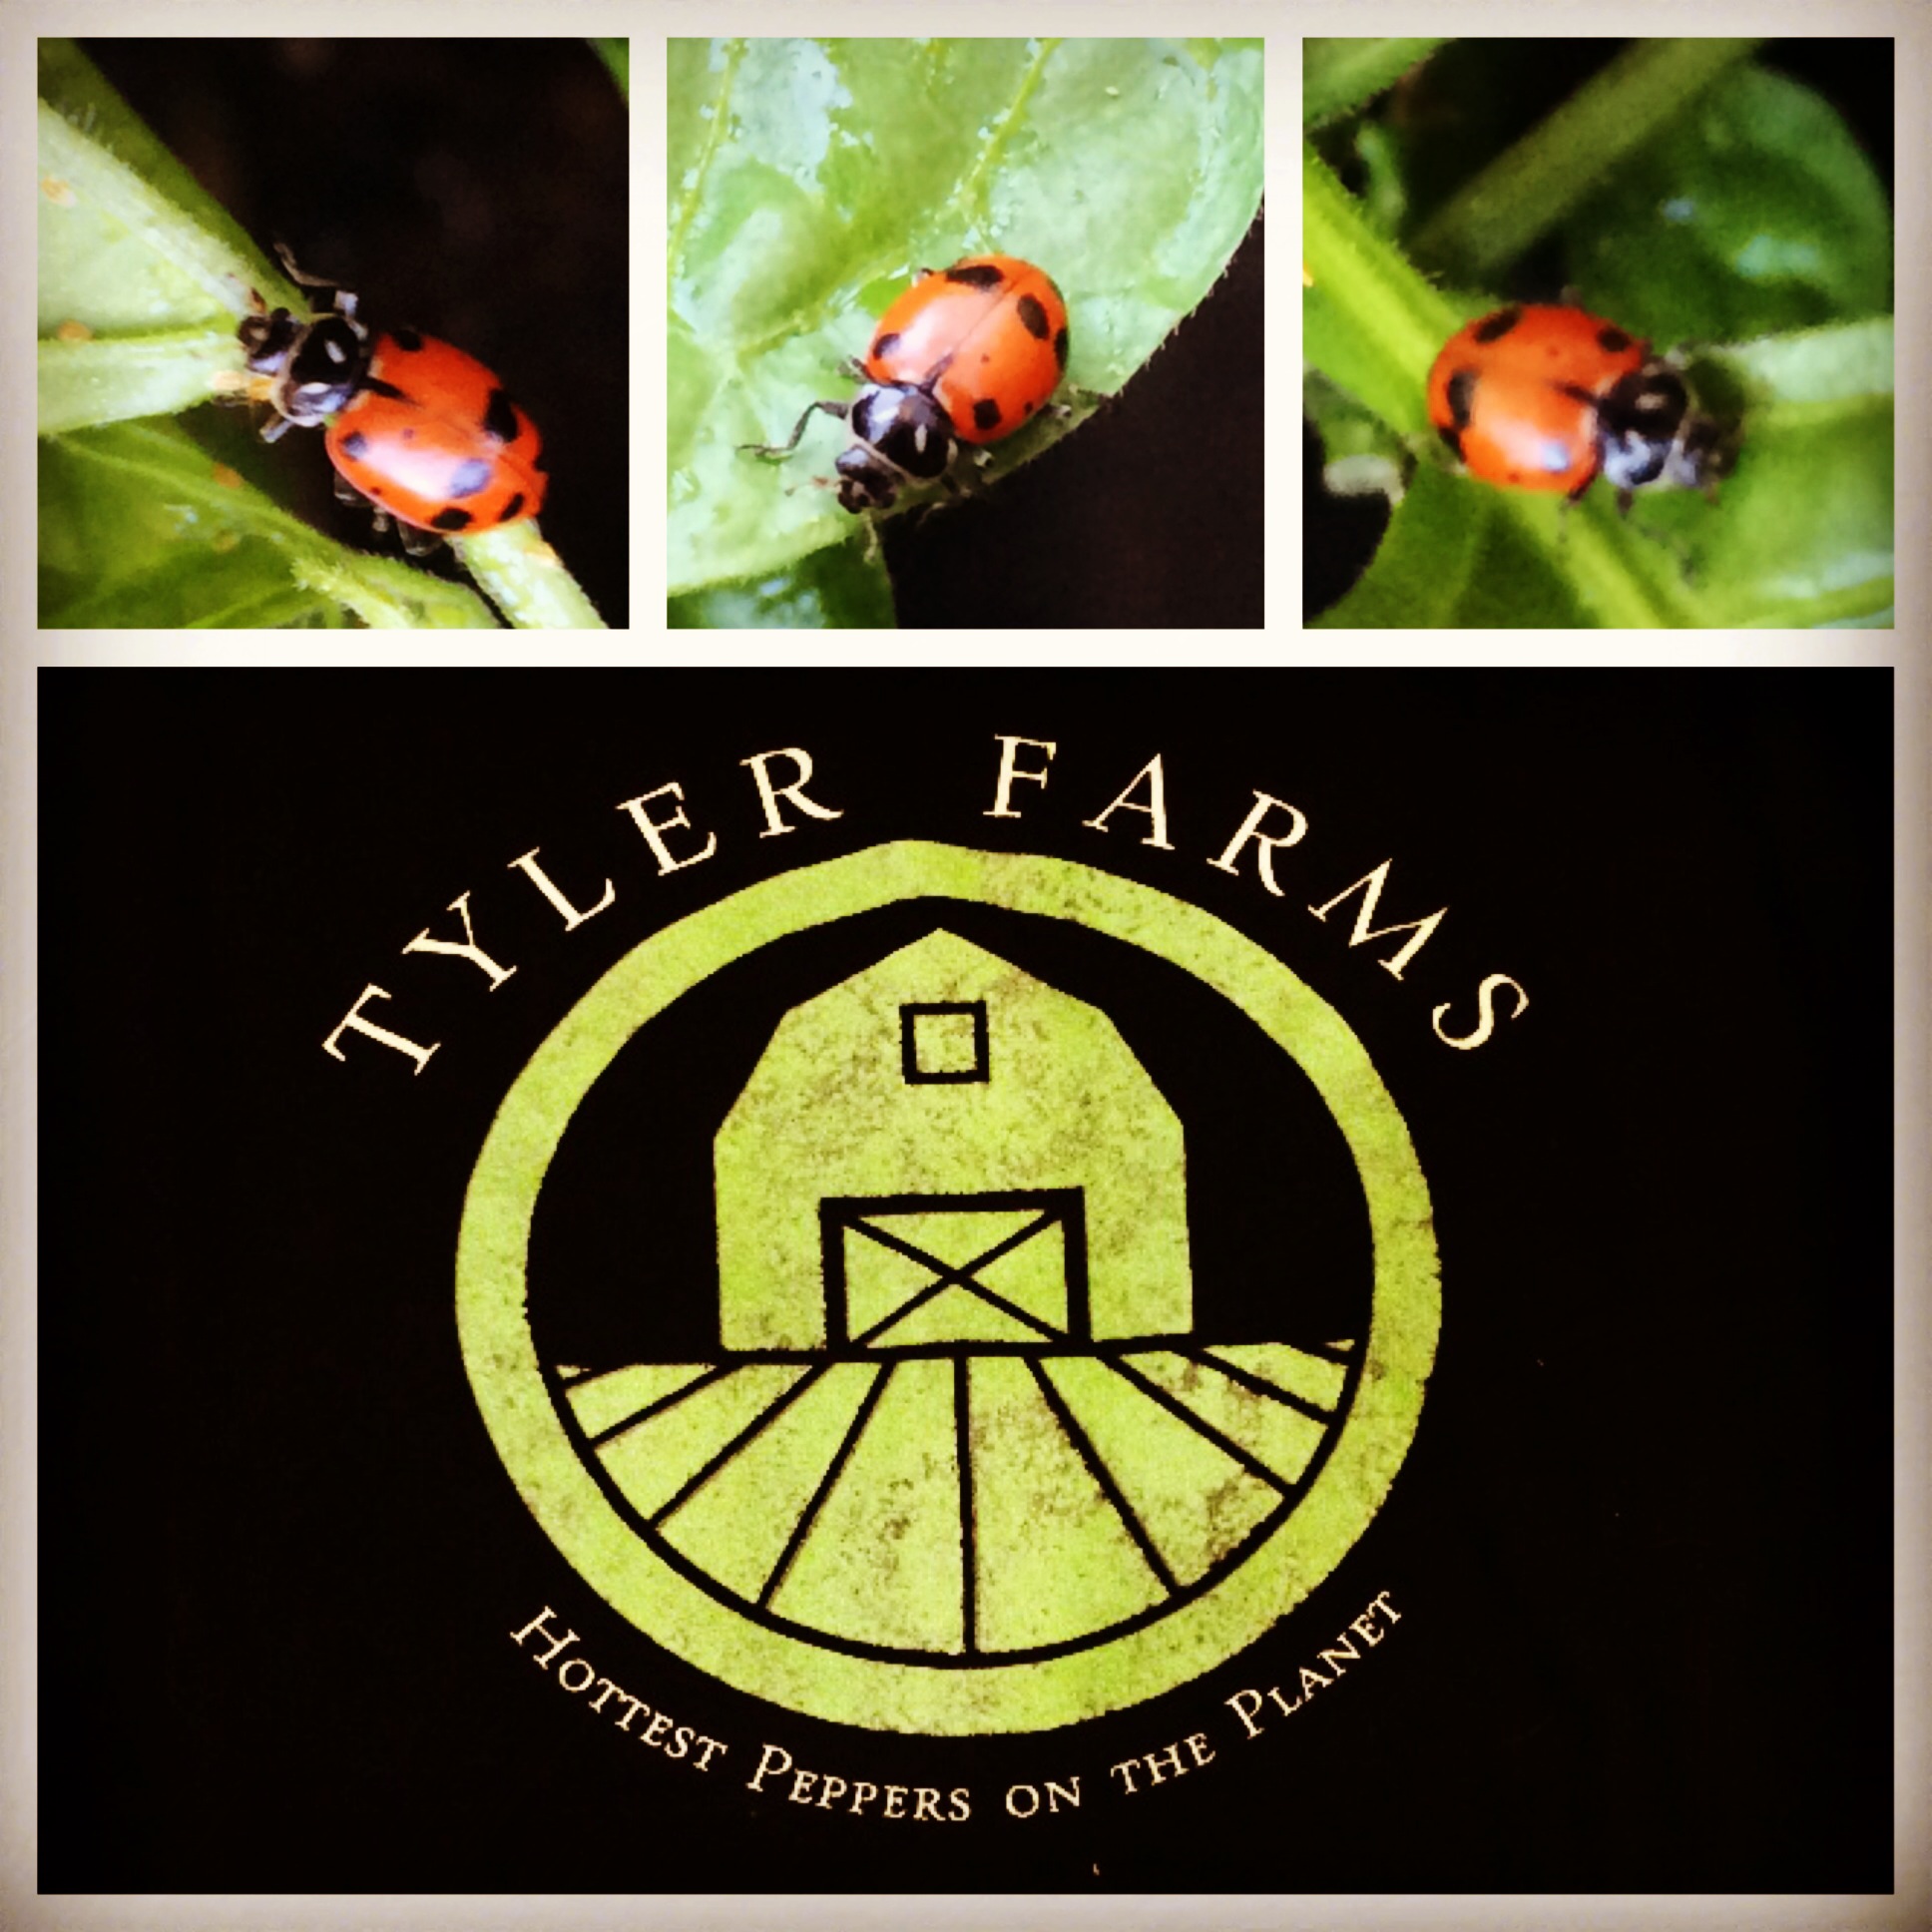 tyler-farms-ladybugs.jpg